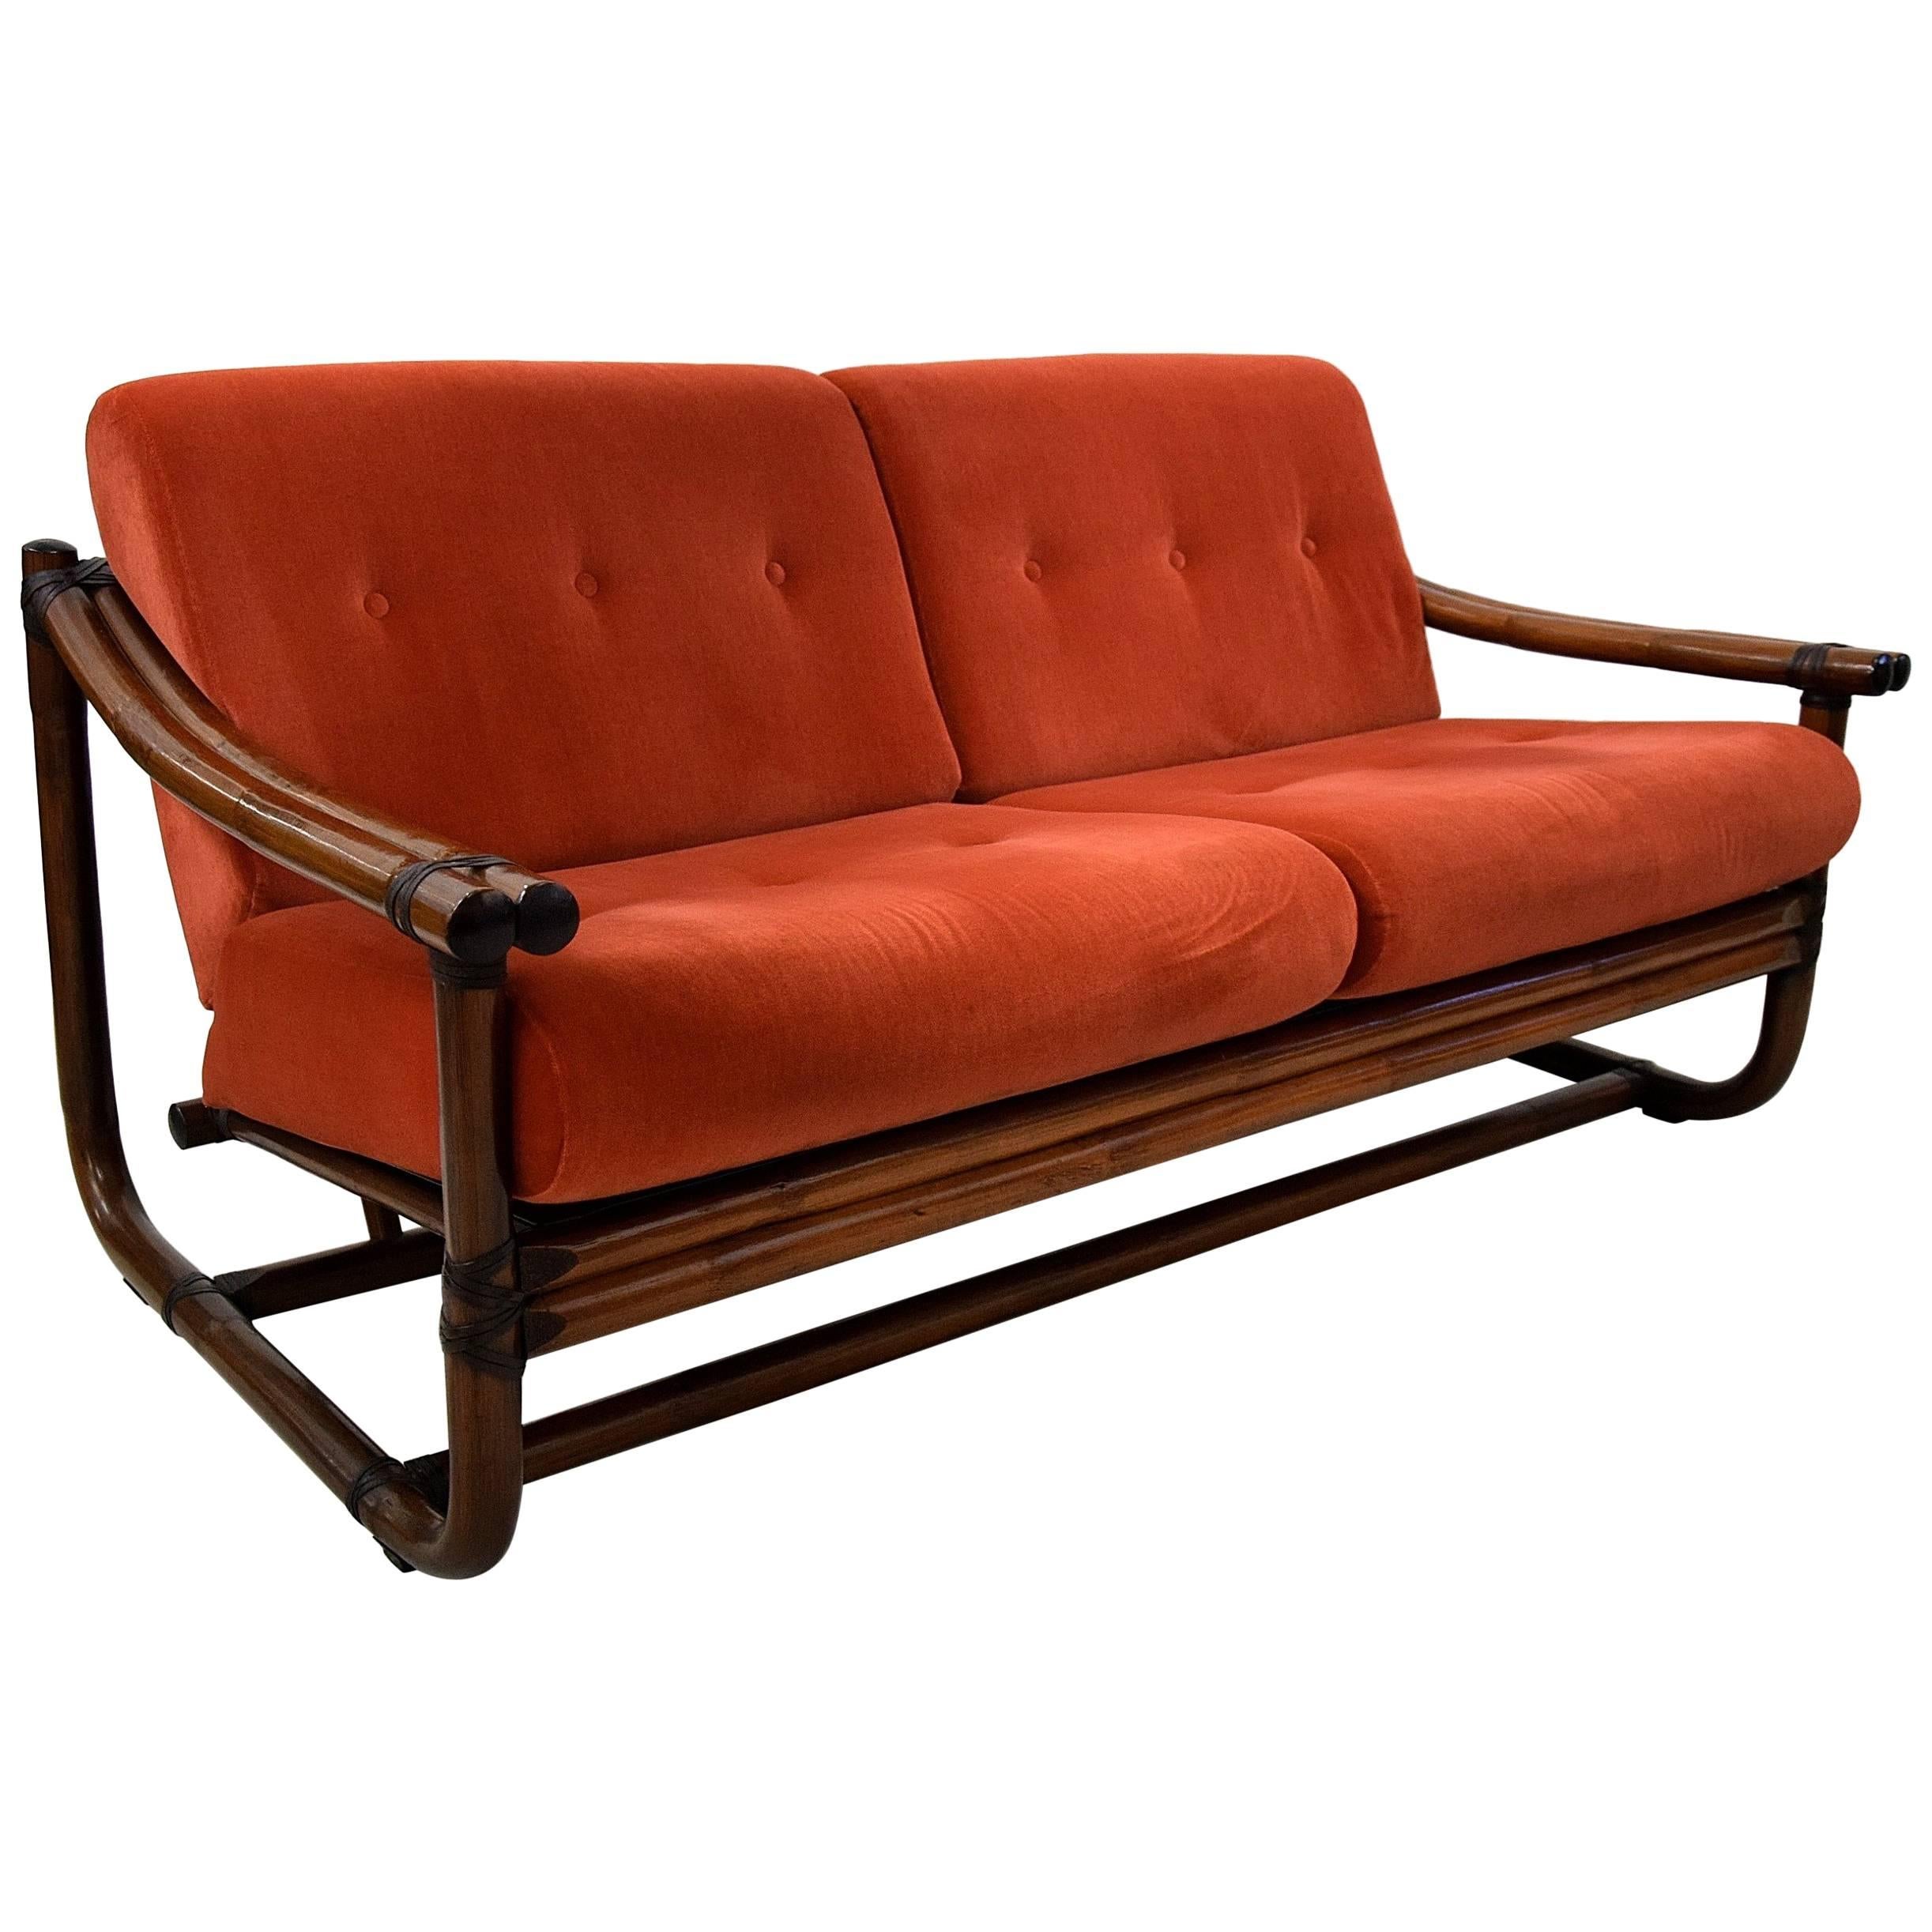 Mid-century Modern Italian Bamboo Two-Seat Lounge Sofa